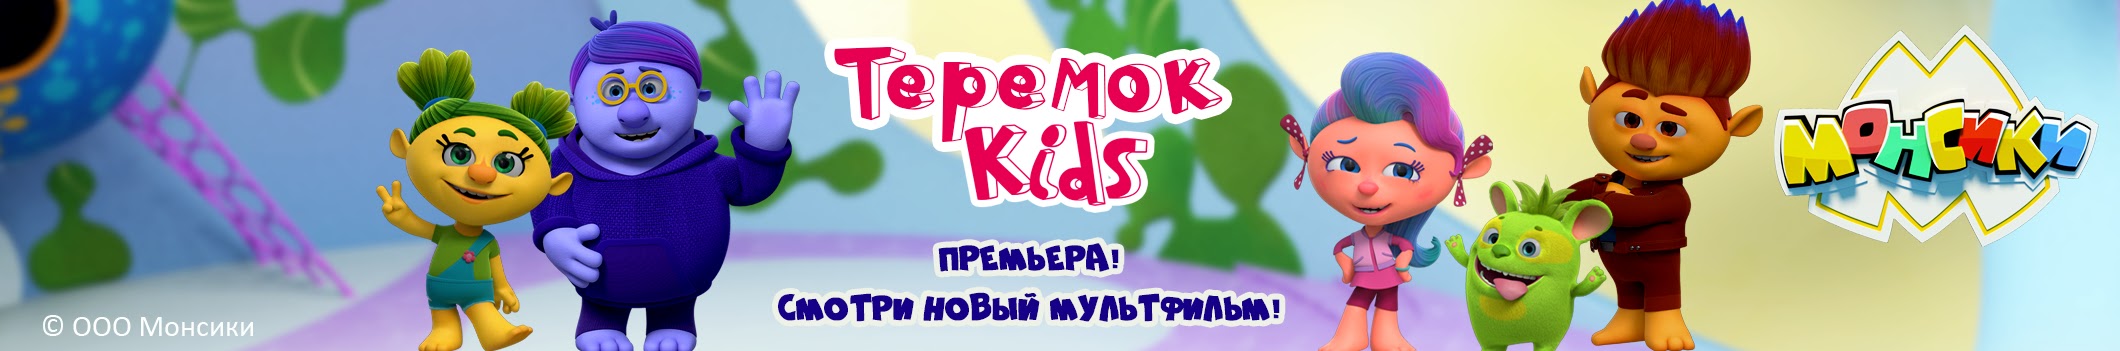 Теремок Kids